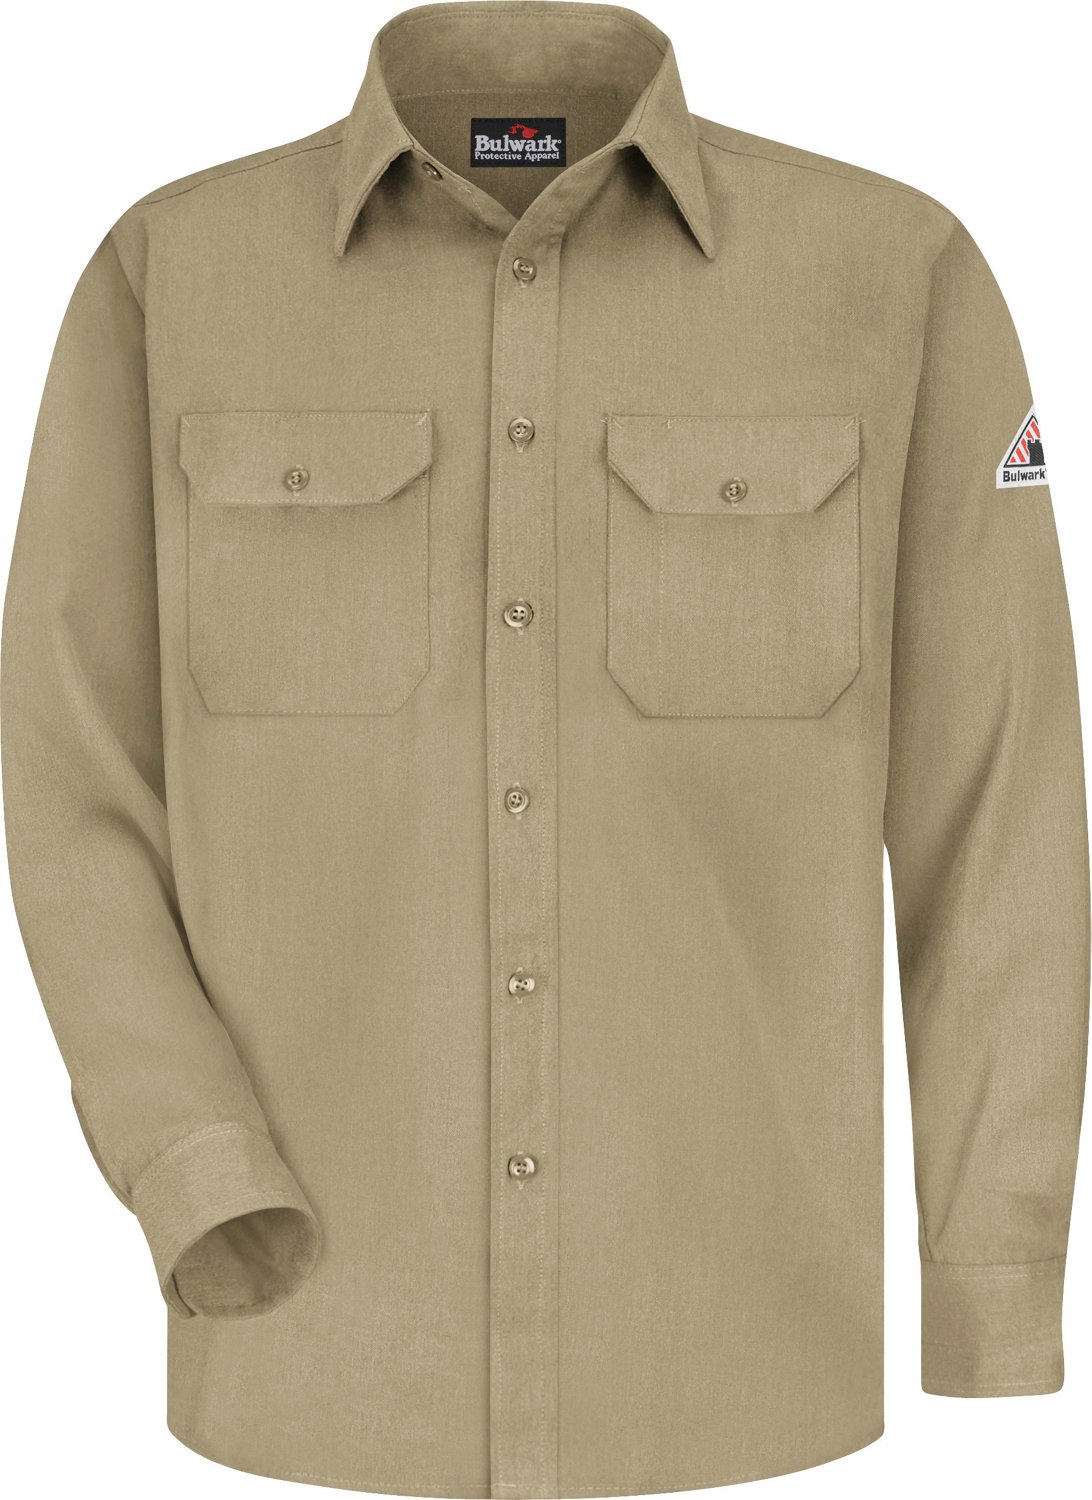 Bulwark Mens CoolTouch 2 Uniform Long Sleeve Work Shirt